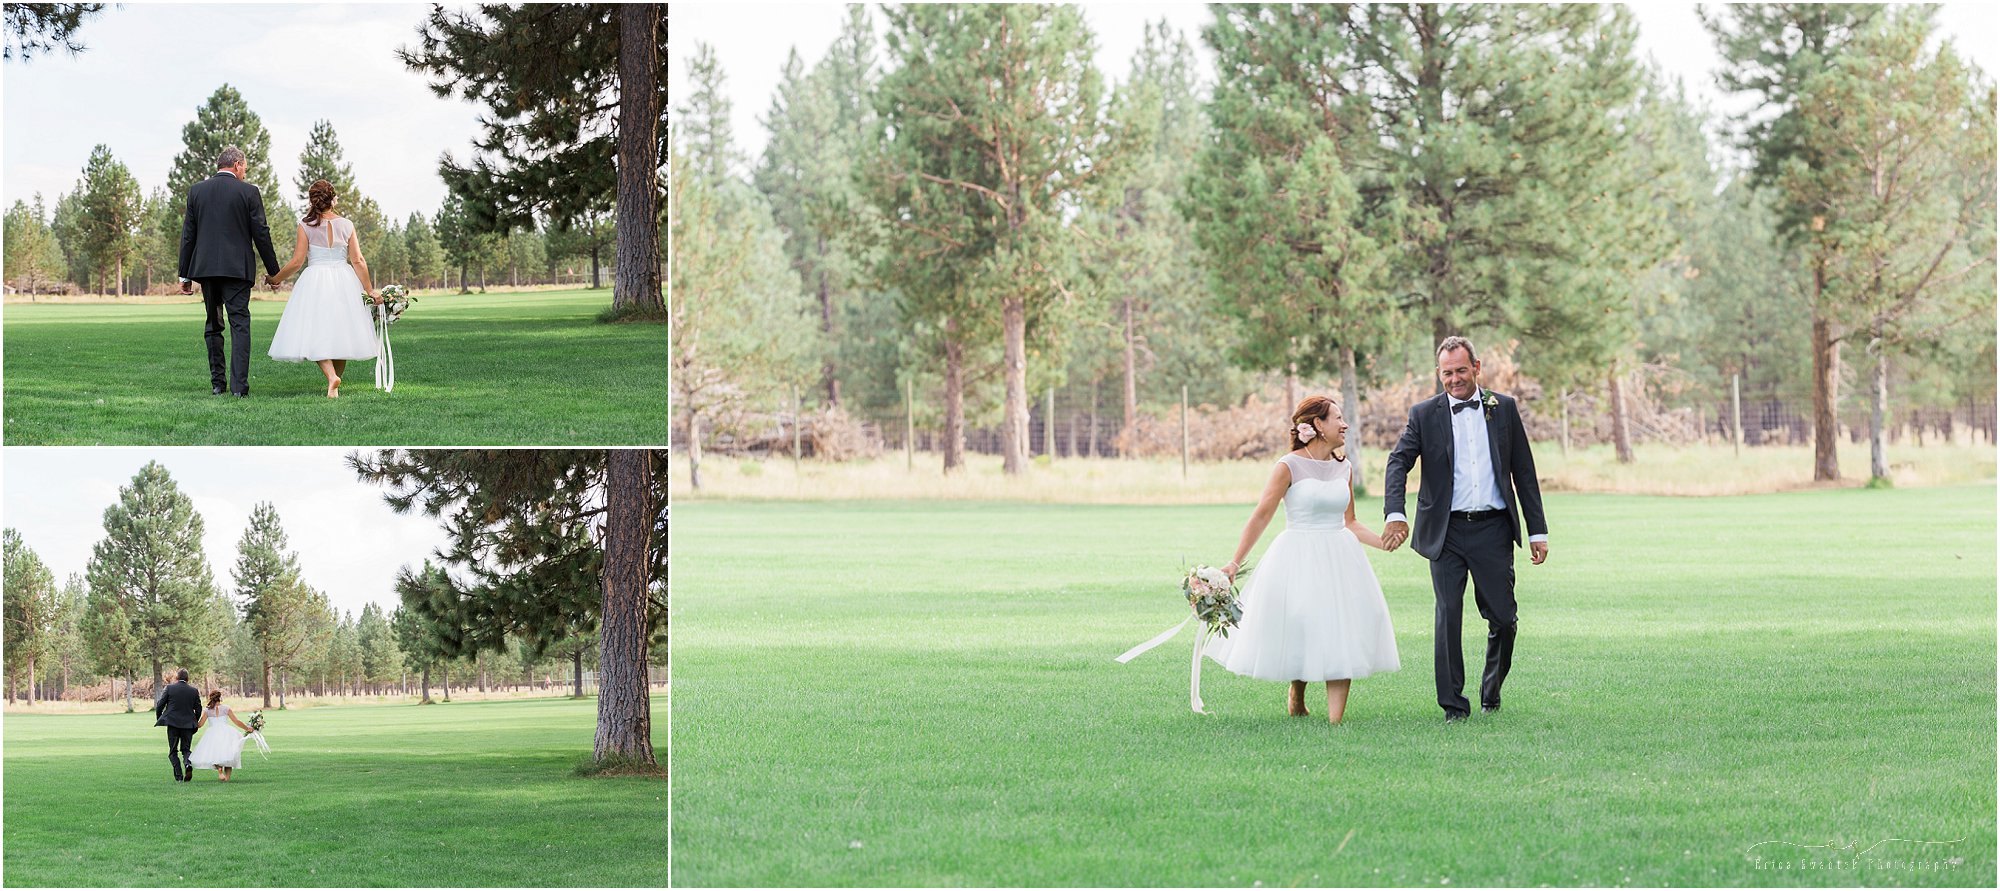 A bride & groom runs through the lawn for natural wedding photos at their Central Oregon outdoor wedding. | Erica Swantek Photography